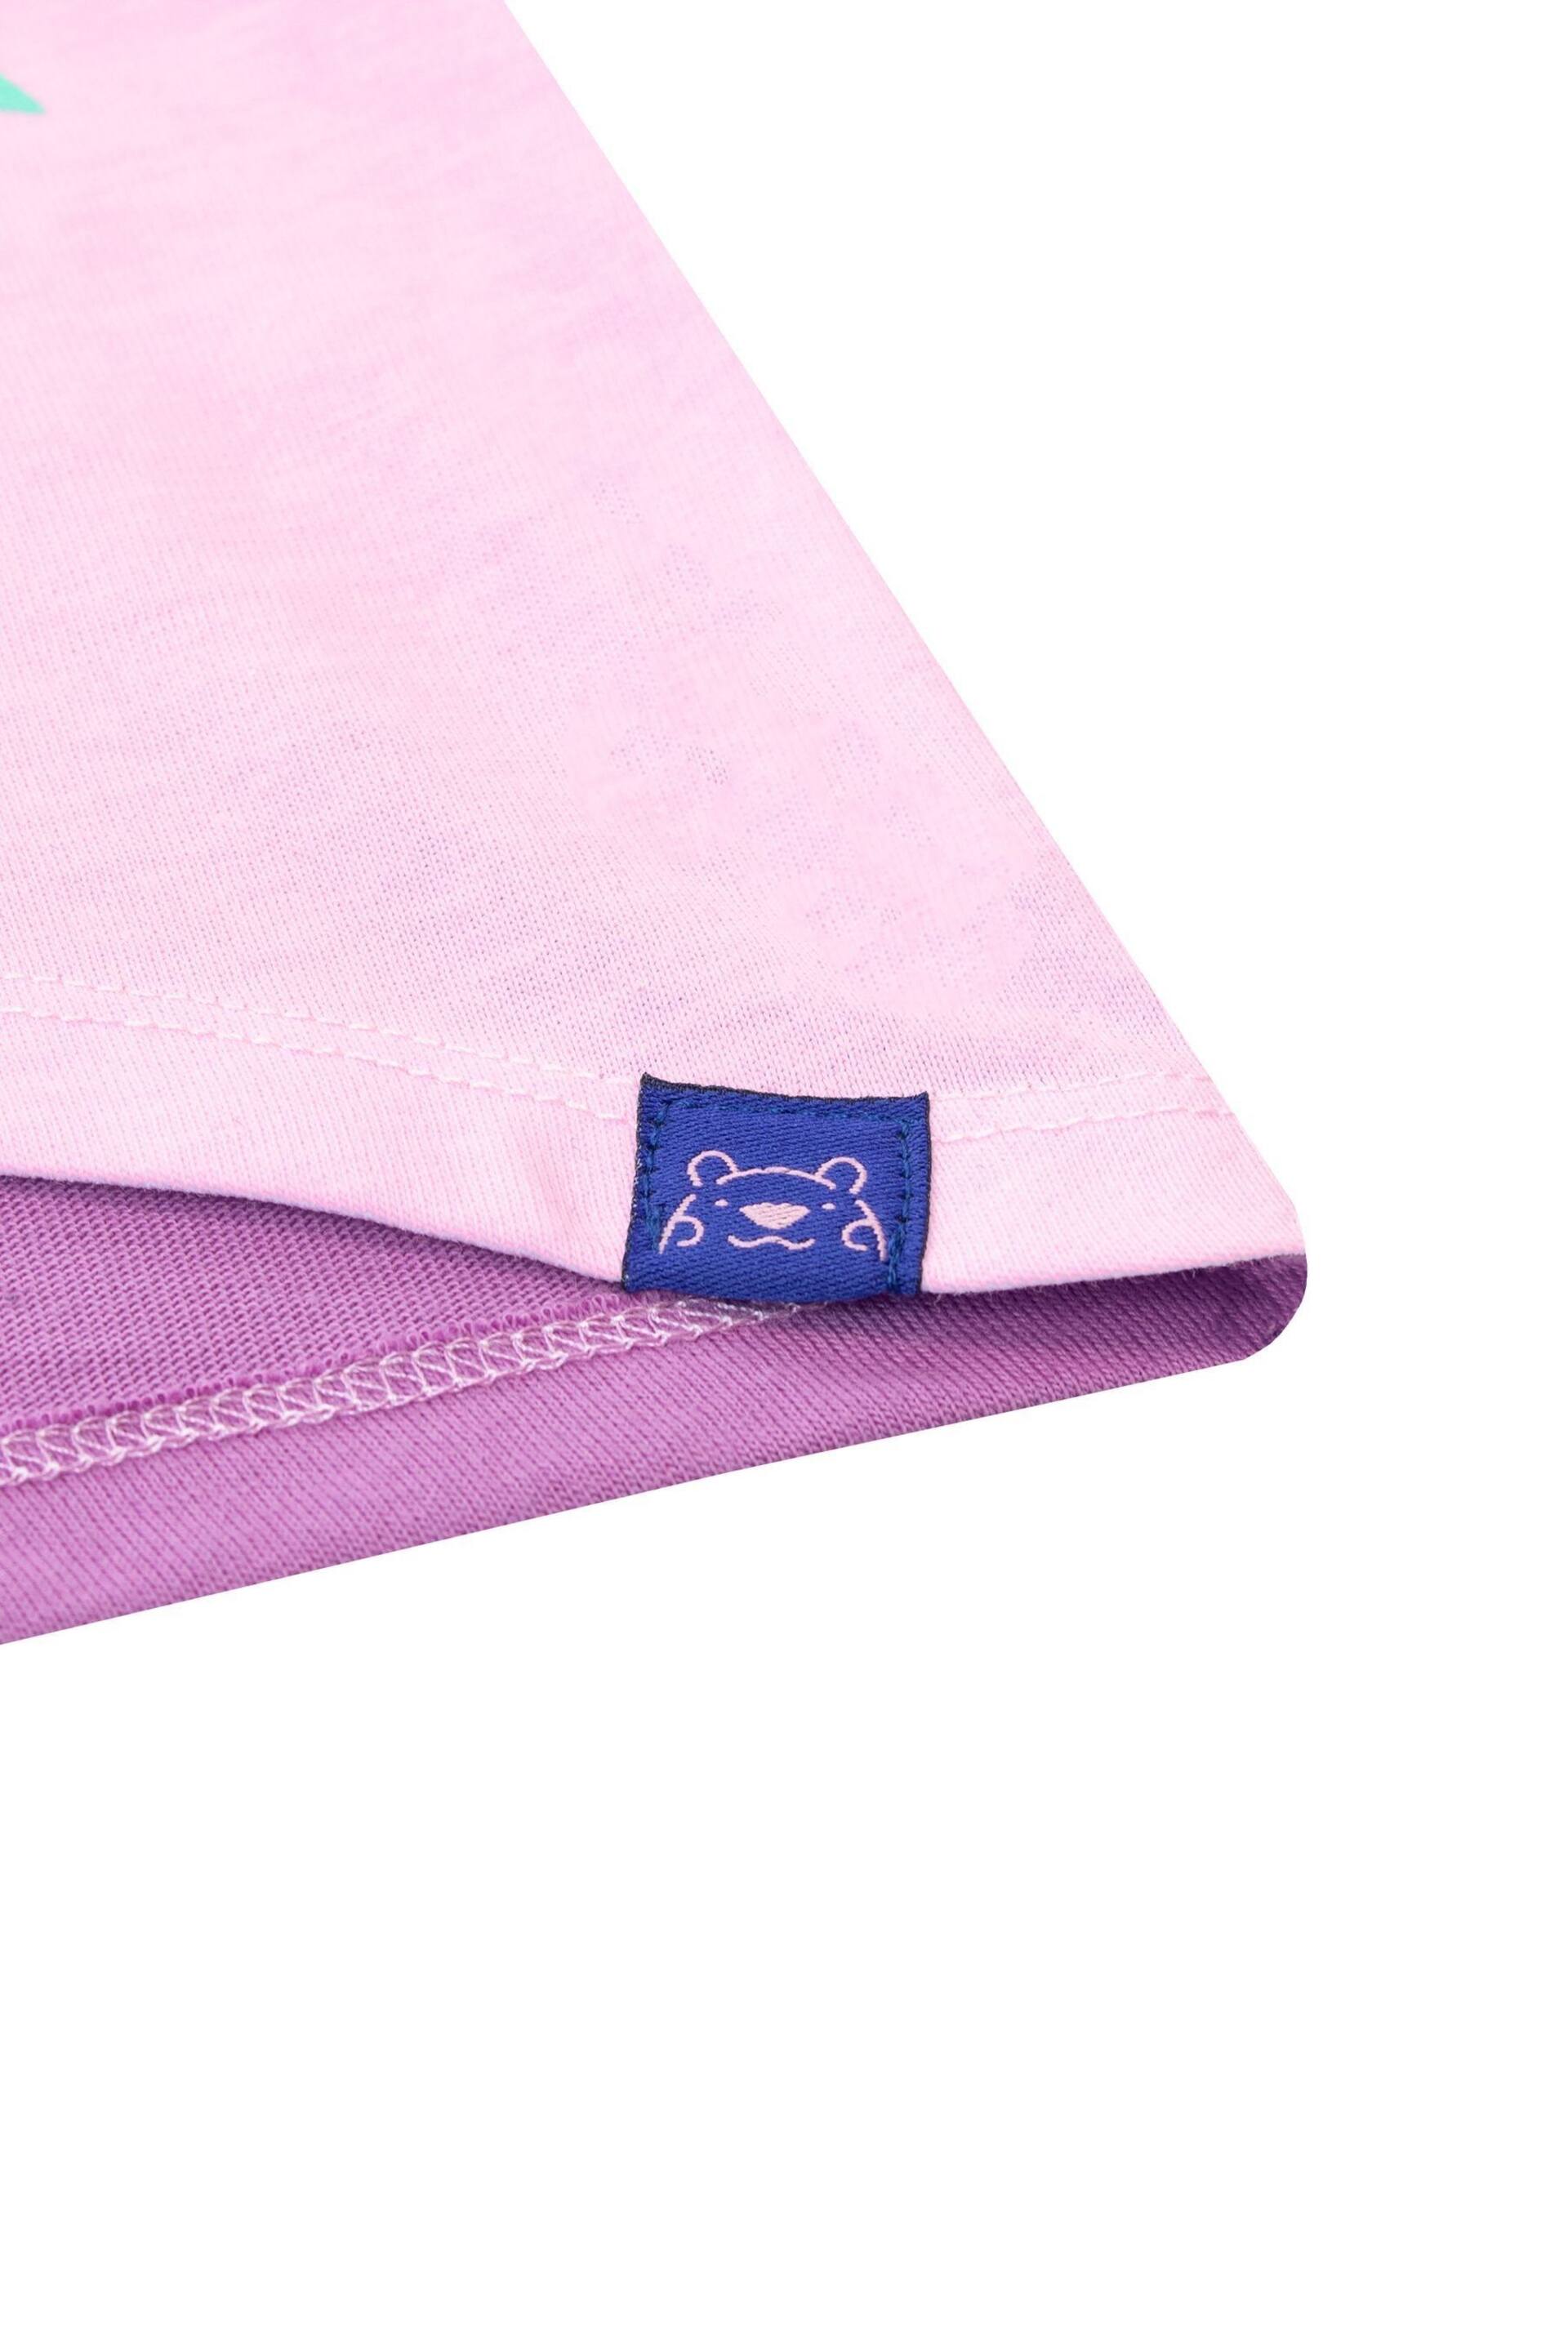 Harry Bear Purple Glitter Unicorn T-Shirt - Image 3 of 4